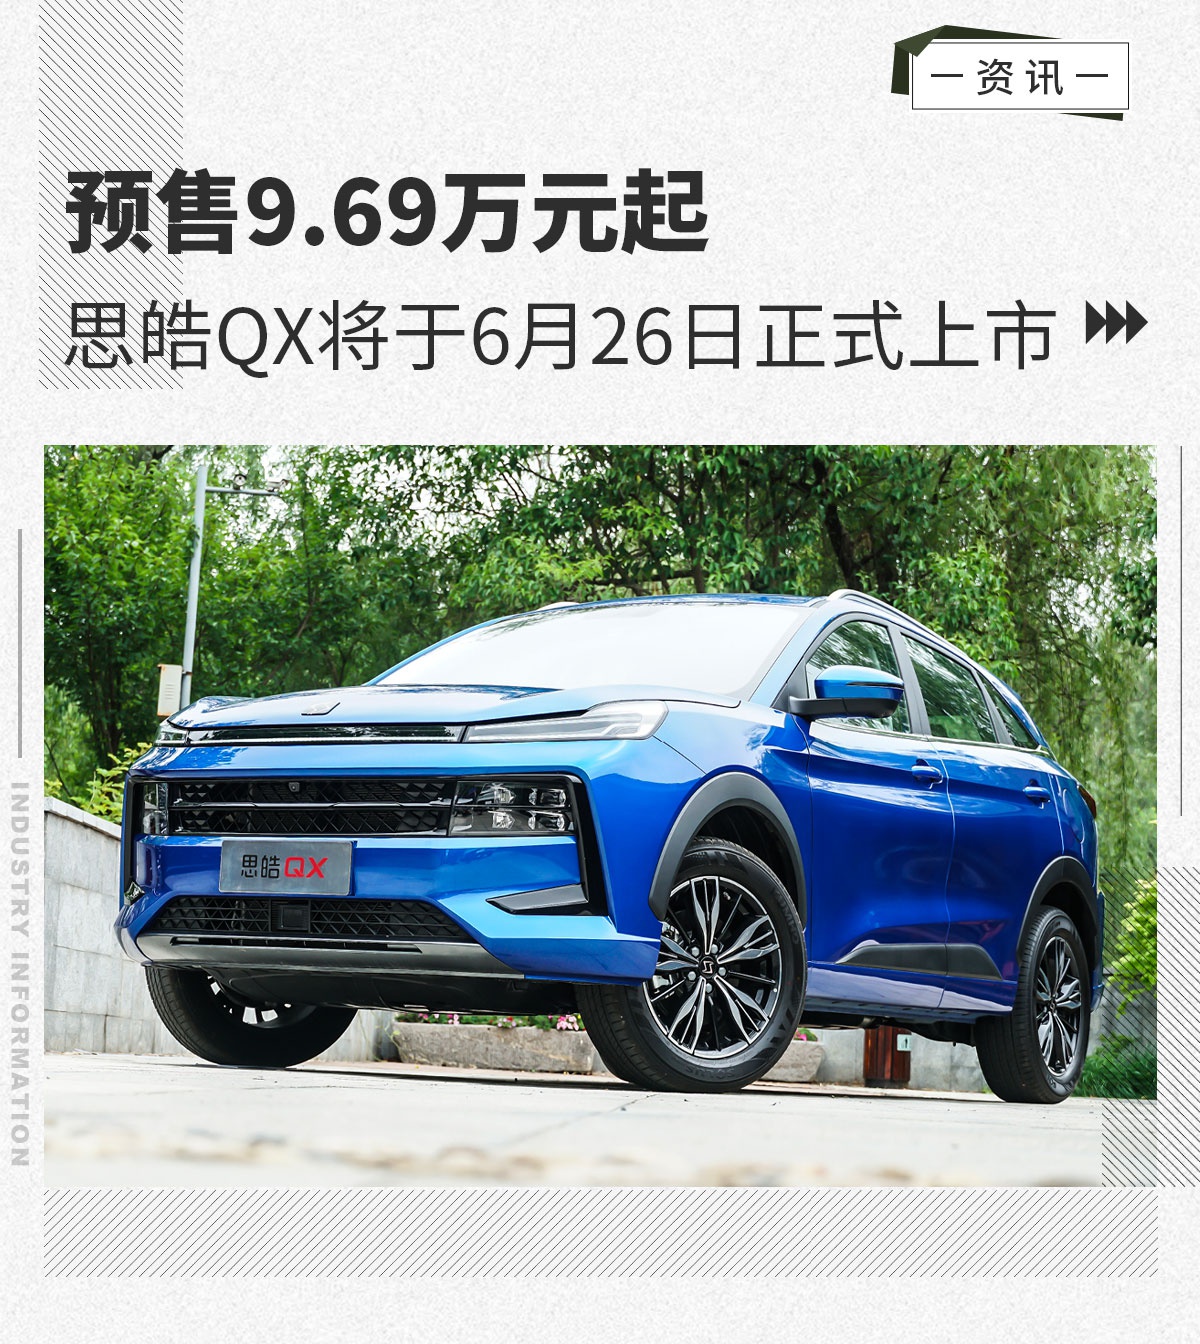 6月26日思皓QX将上市 预售9.69万元起